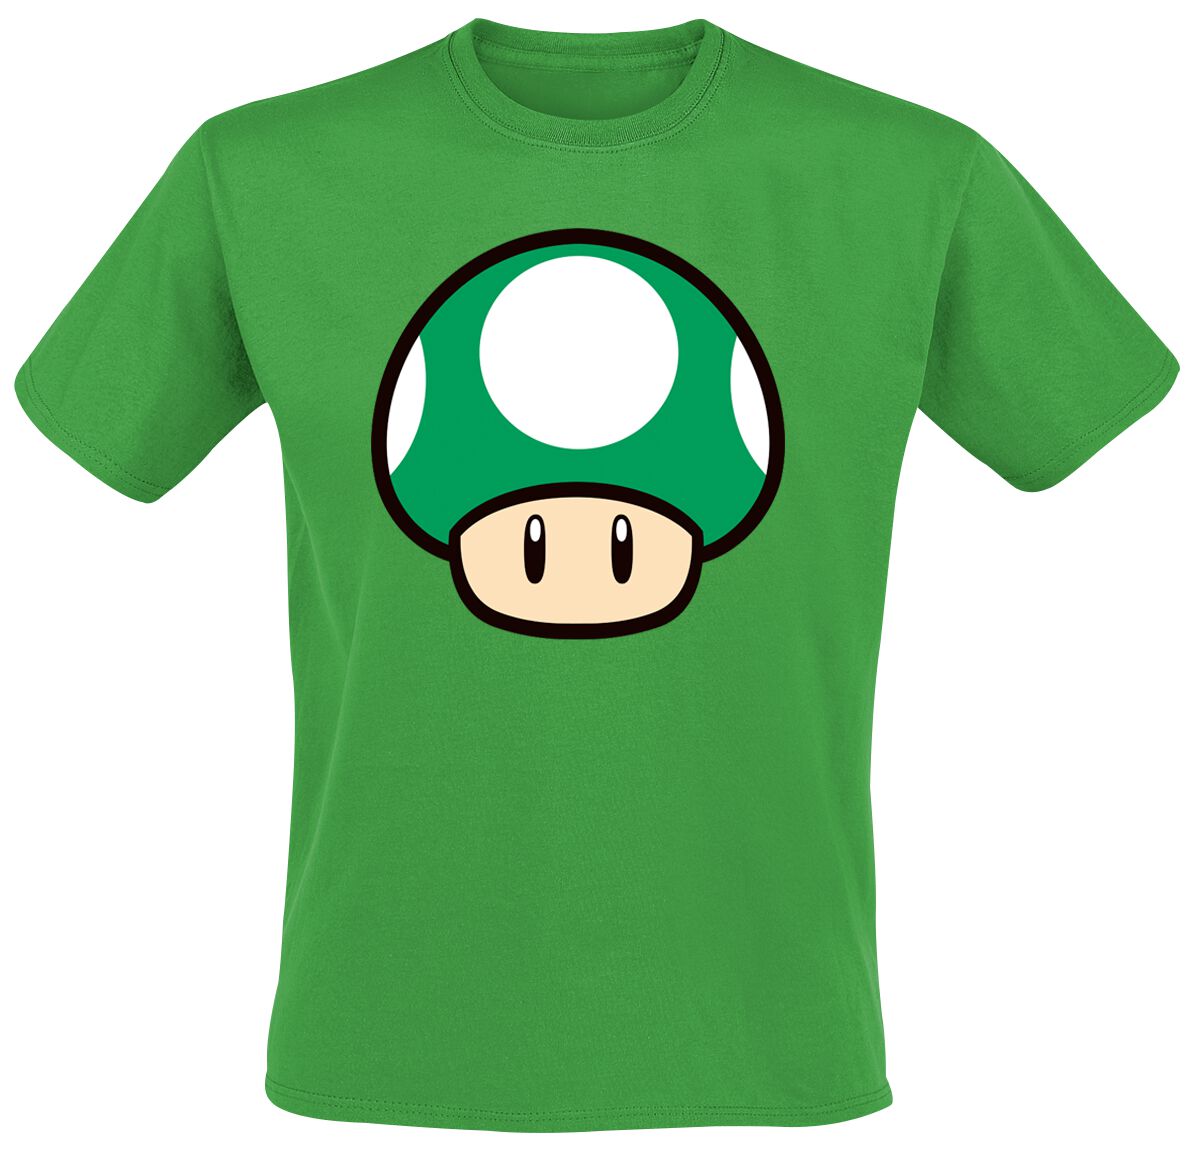 Super Mario - Gaming T-Shirt - Mushroom - S bis XL - für Männer - Größe M - grün